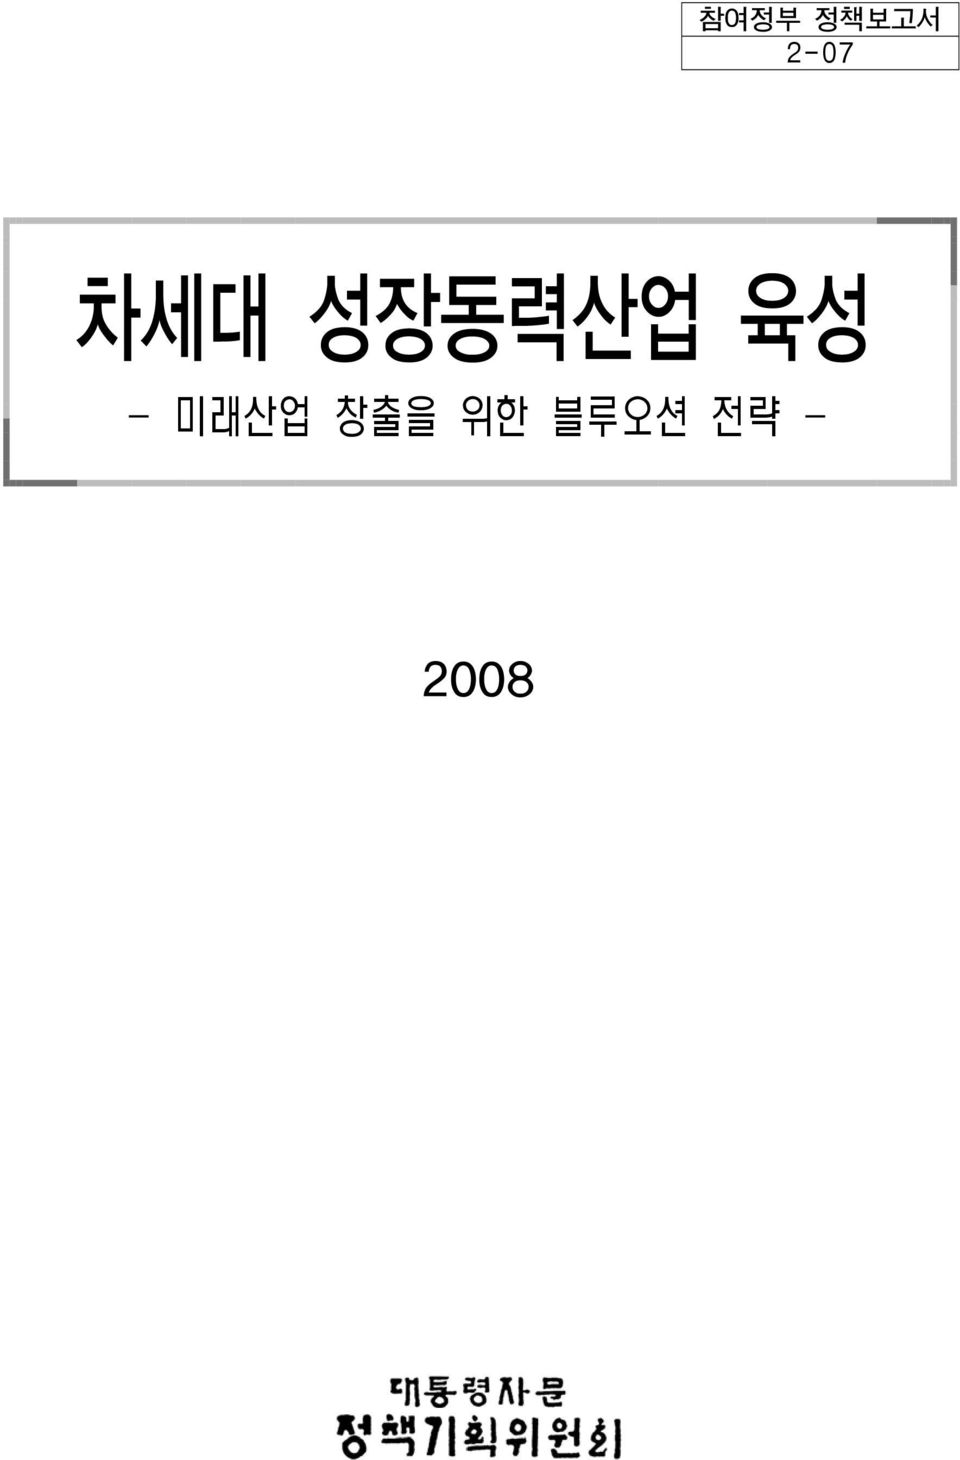 초안자료 <집필 참여자> 안보전략비서관: 박 선 원